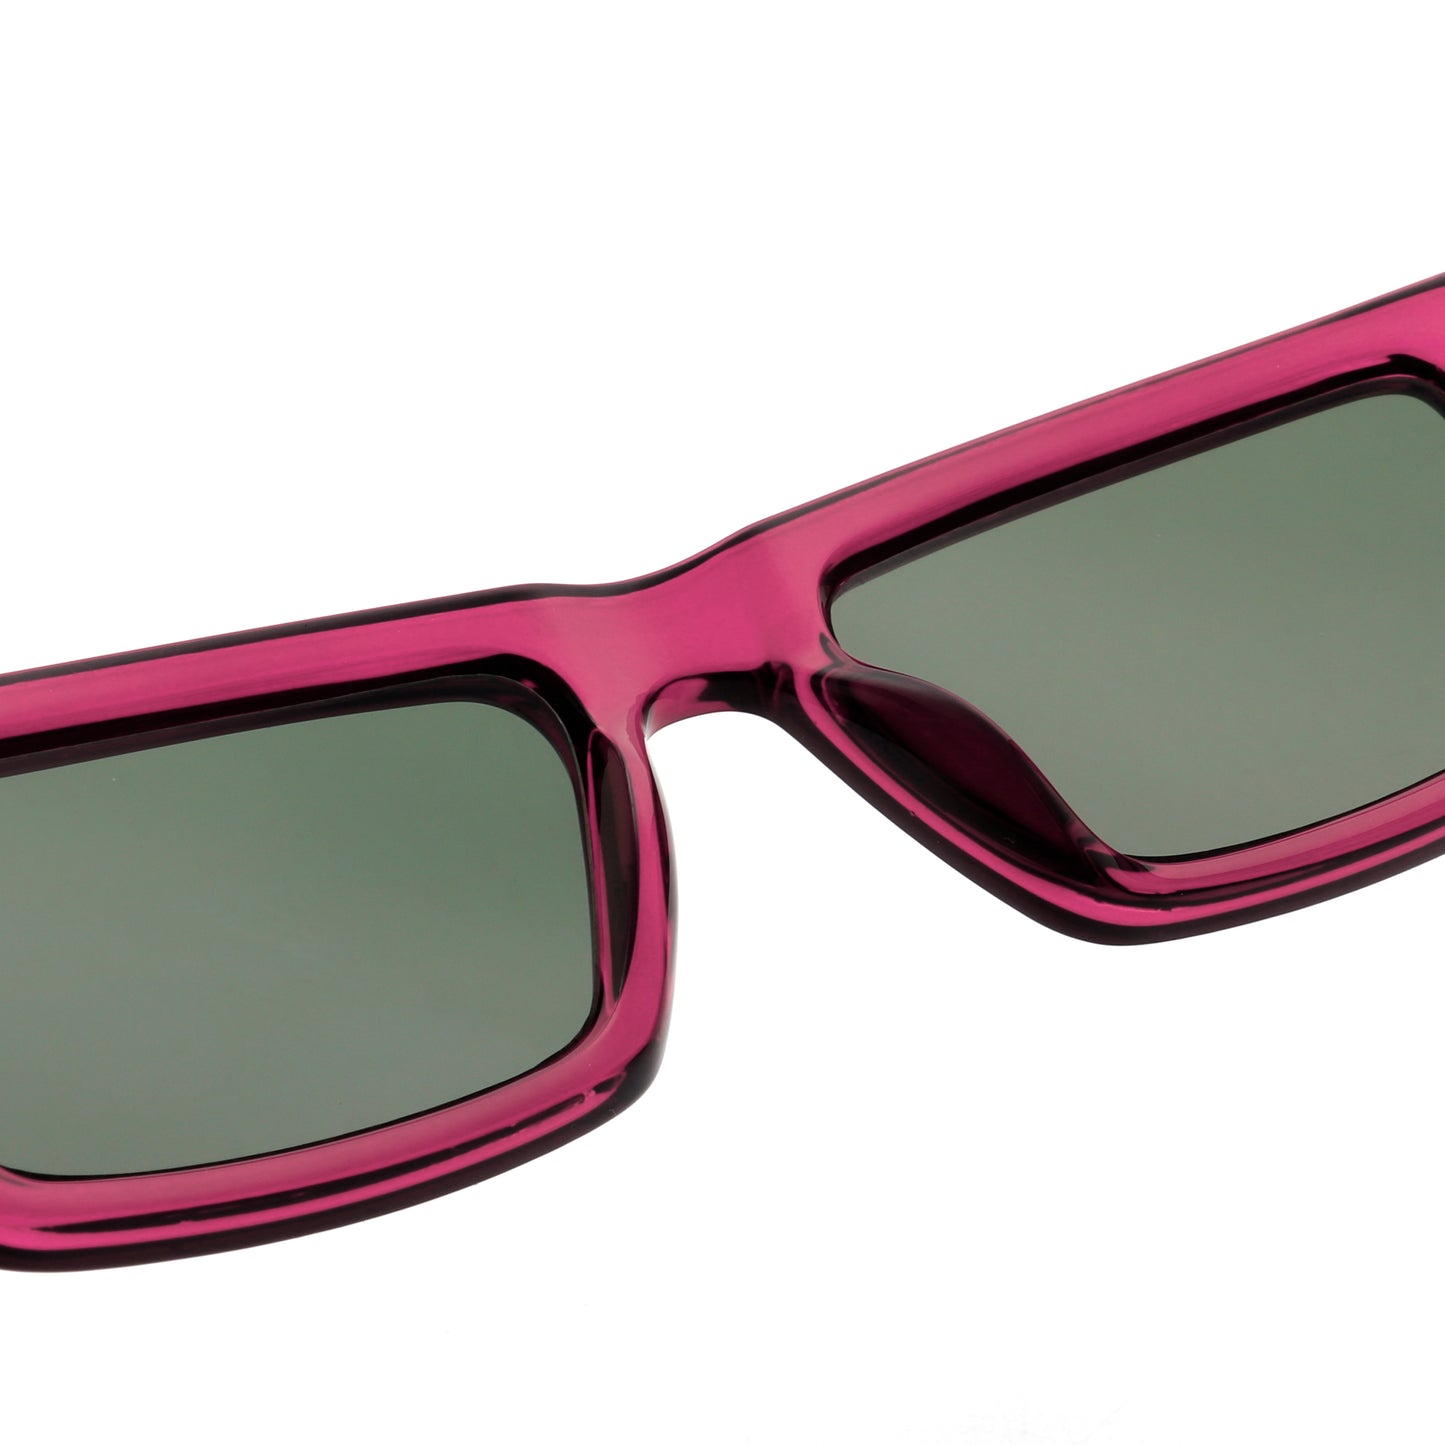 A.Kjaerbede Fame Sunglasses in Burgundy Transparent color